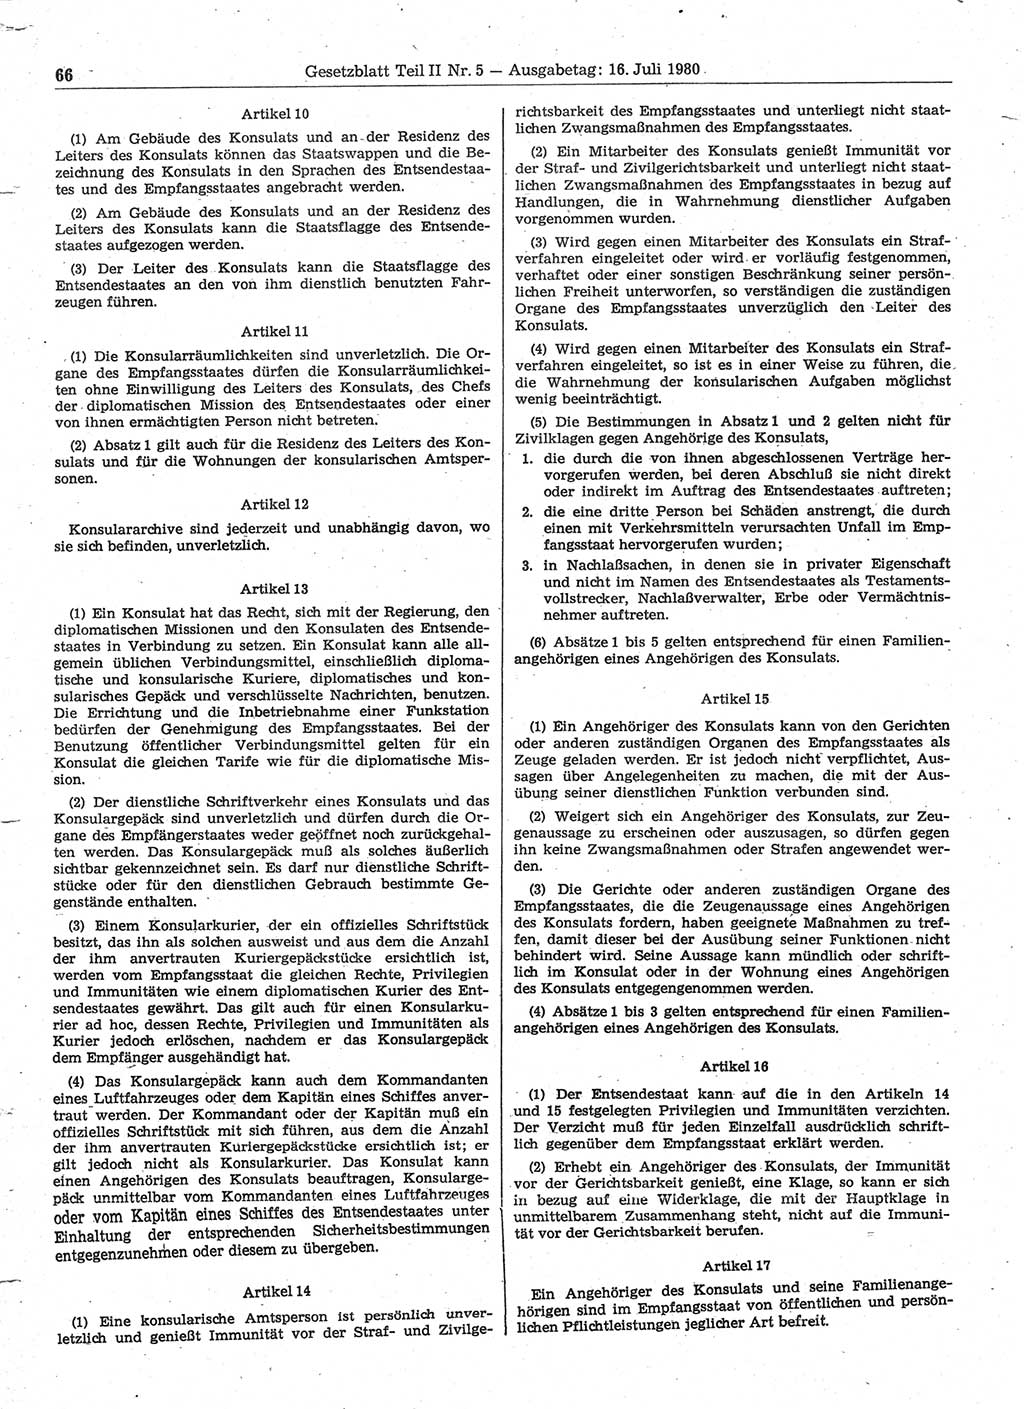 Gesetzblatt (GBl.) der Deutschen Demokratischen Republik (DDR) Teil ⅠⅠ 1980, Seite 66 (GBl. DDR ⅠⅠ 1980, S. 66)